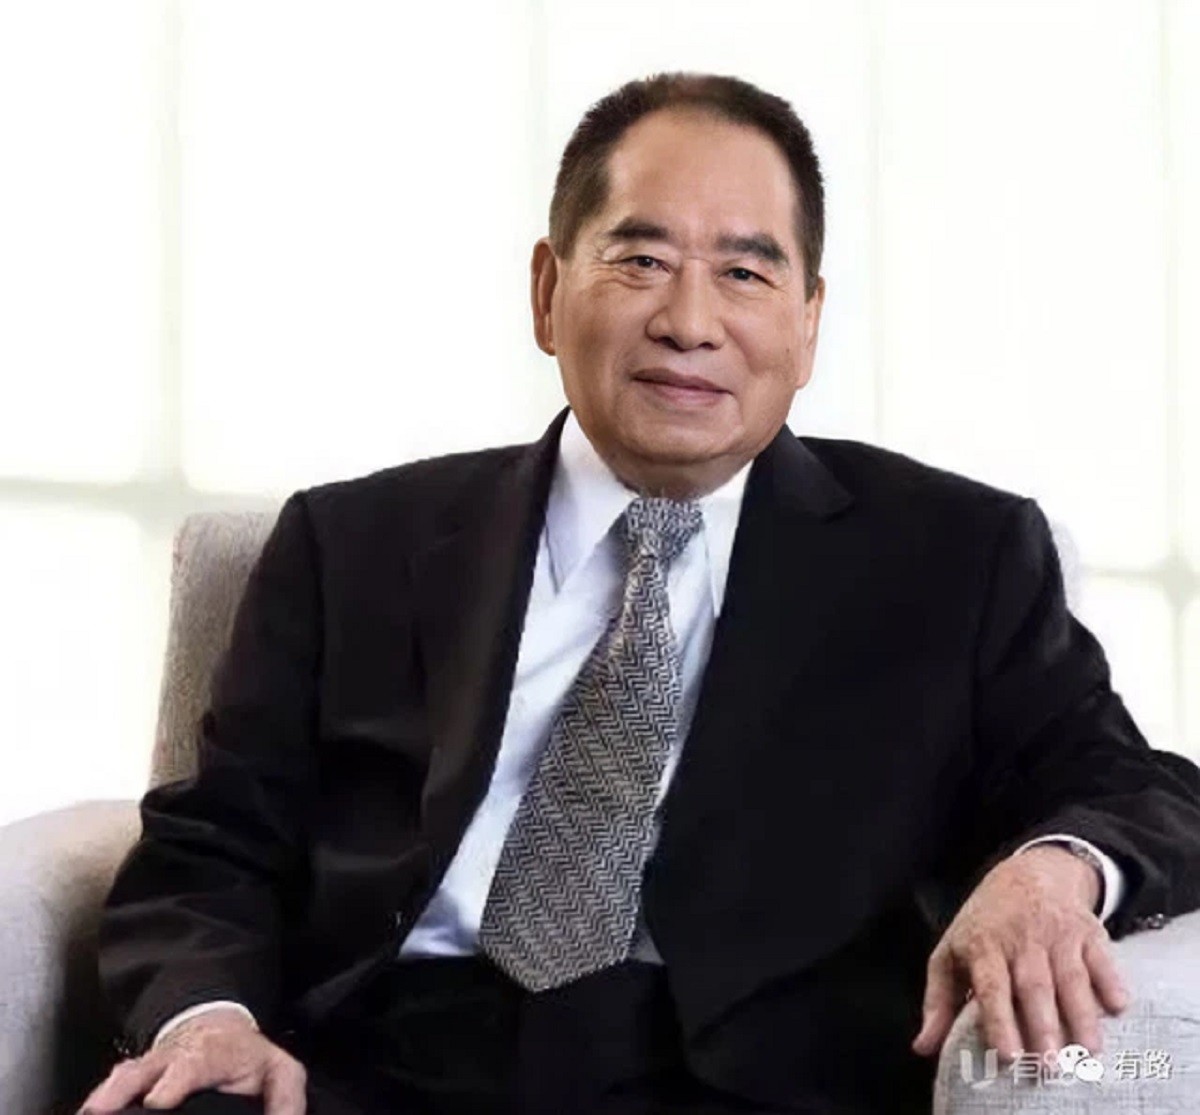 
Chân dung doanh nhân&nbsp;Henry Sy -&nbsp;ông trùm kinh doanh, nhà đầu tư và nhà từ thiện người Philippines
